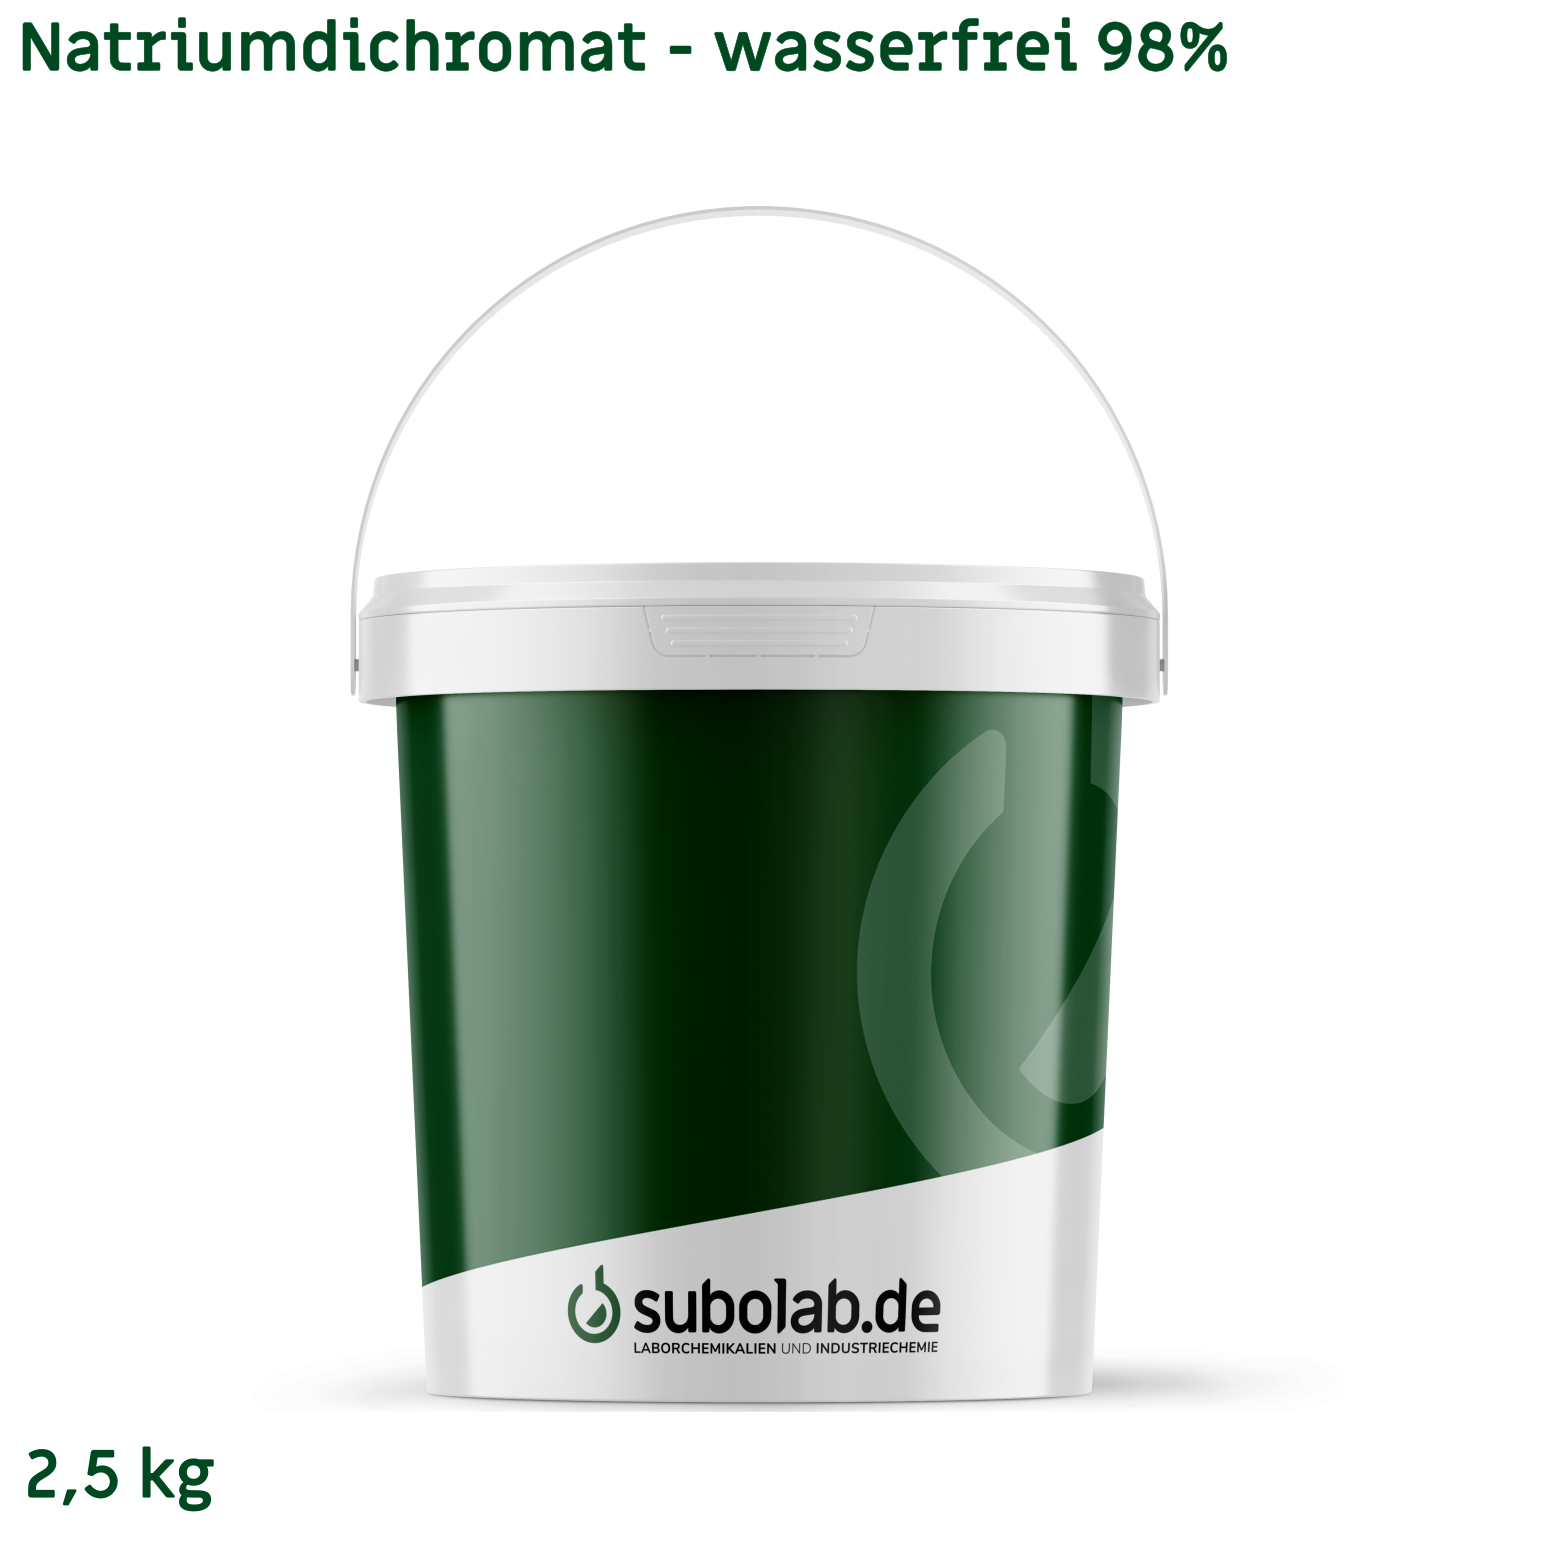 Bild von Natriumdichromat - wasserfrei 98% (2,5 kg)